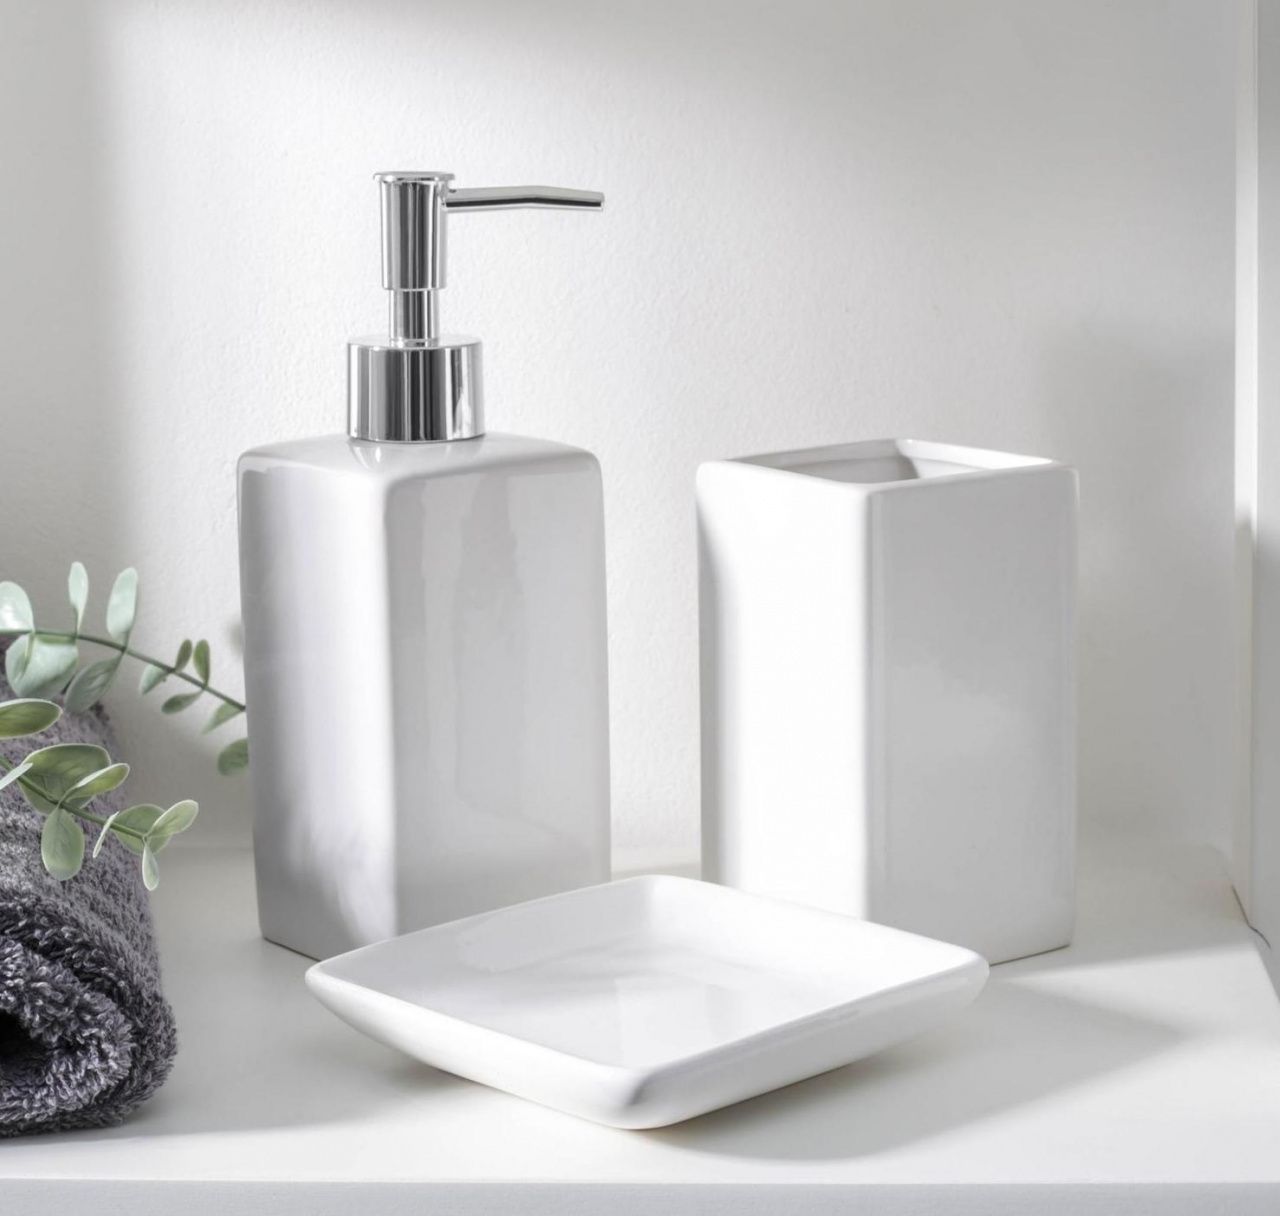 Набор для ванной "Лодж", 3 предмета (мыльница, дозатор для мыла, стакан), цвет белый   5224945   